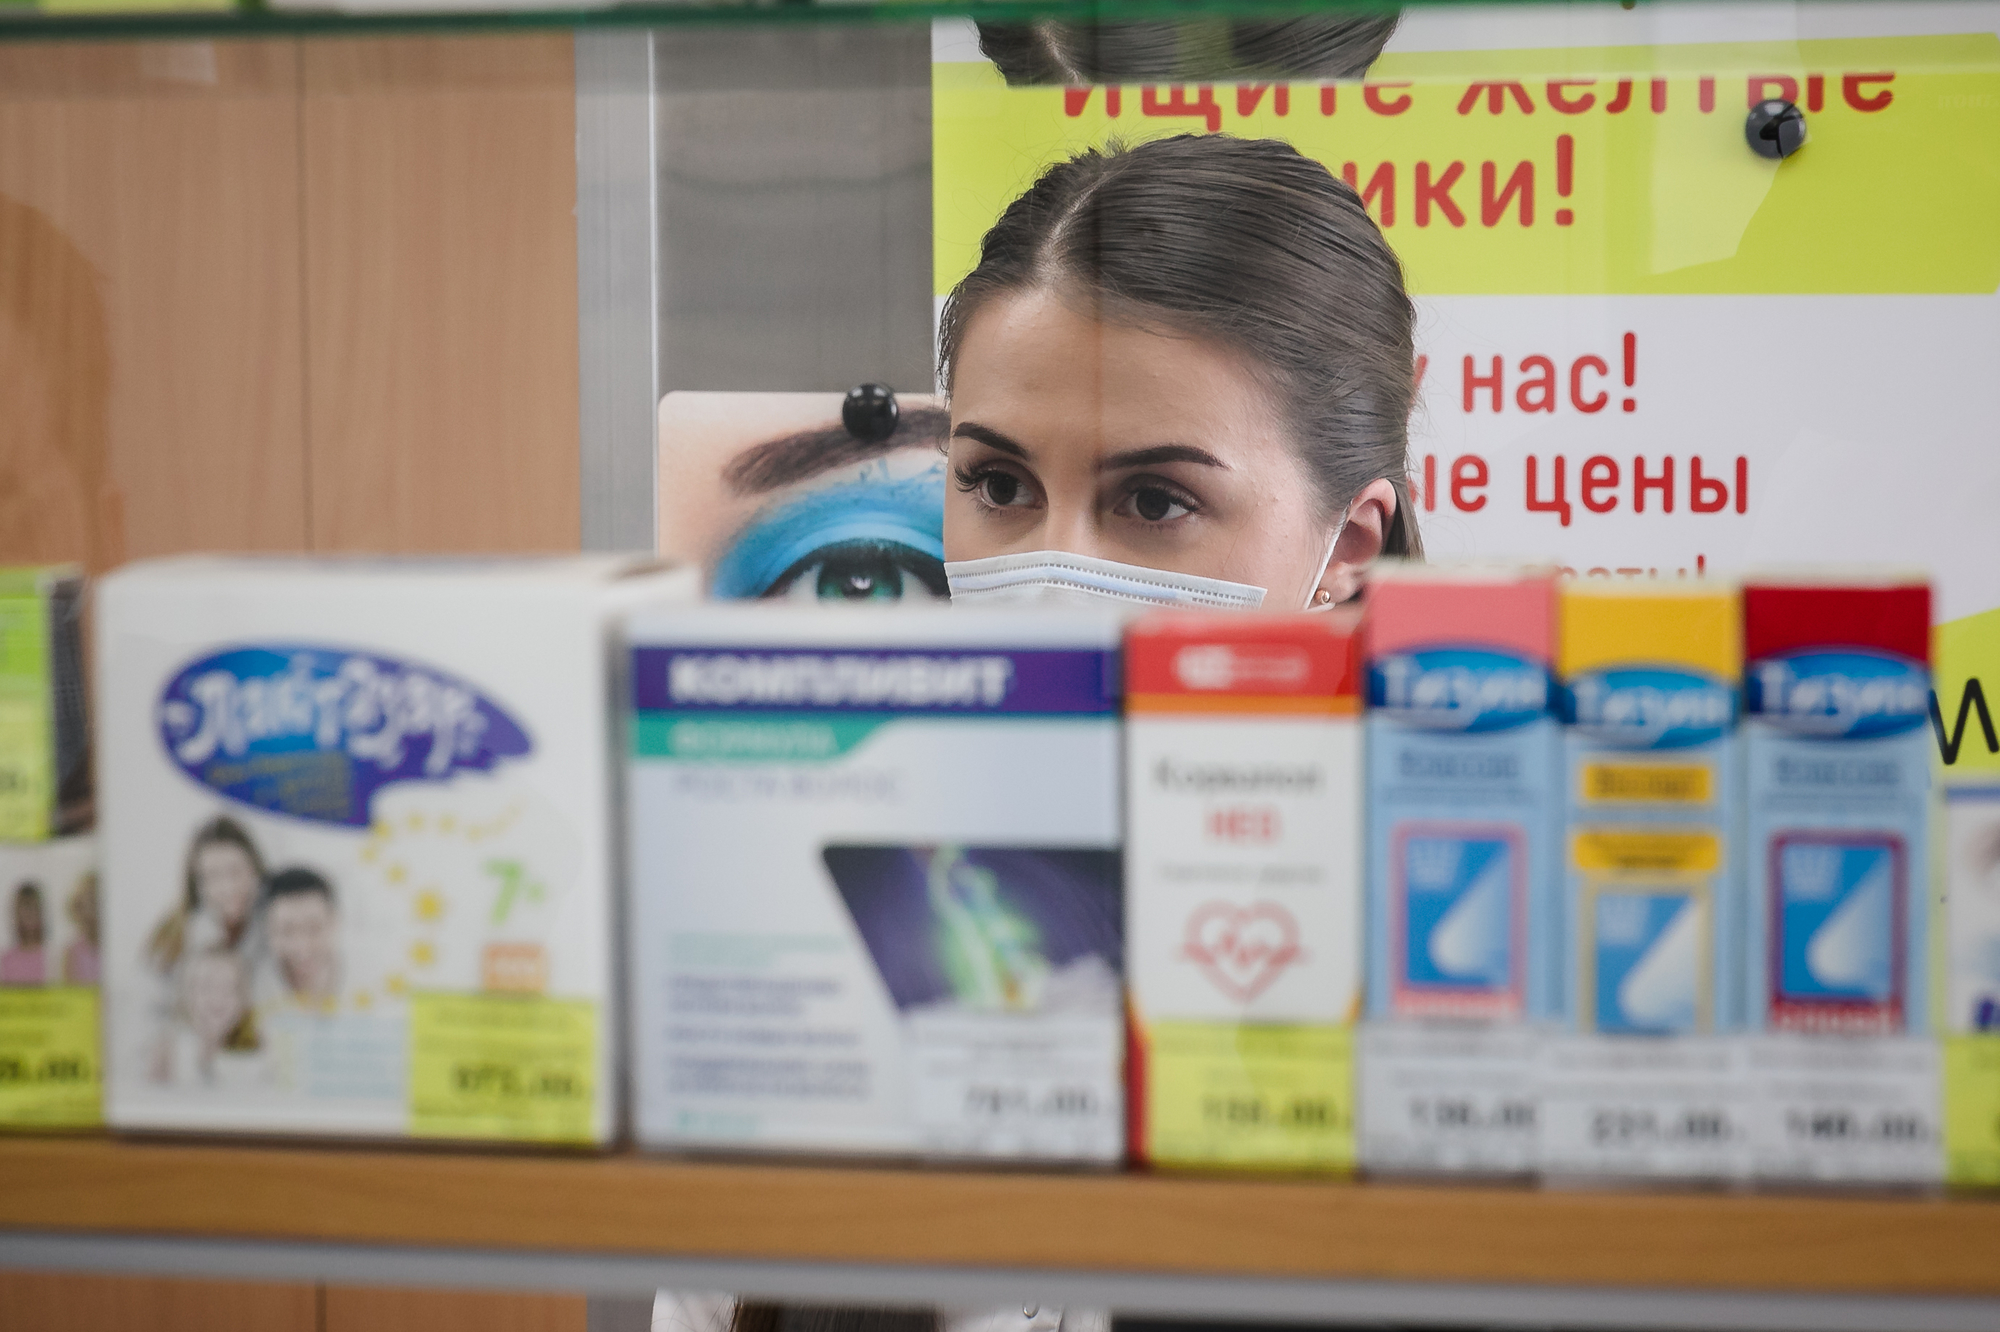 Лекарства в аптеках Мурманска. Справочная аптека Мурманск. Наличие лекарств в аптеках Мурманска. Мурманск аптеки работающие с 08:00.